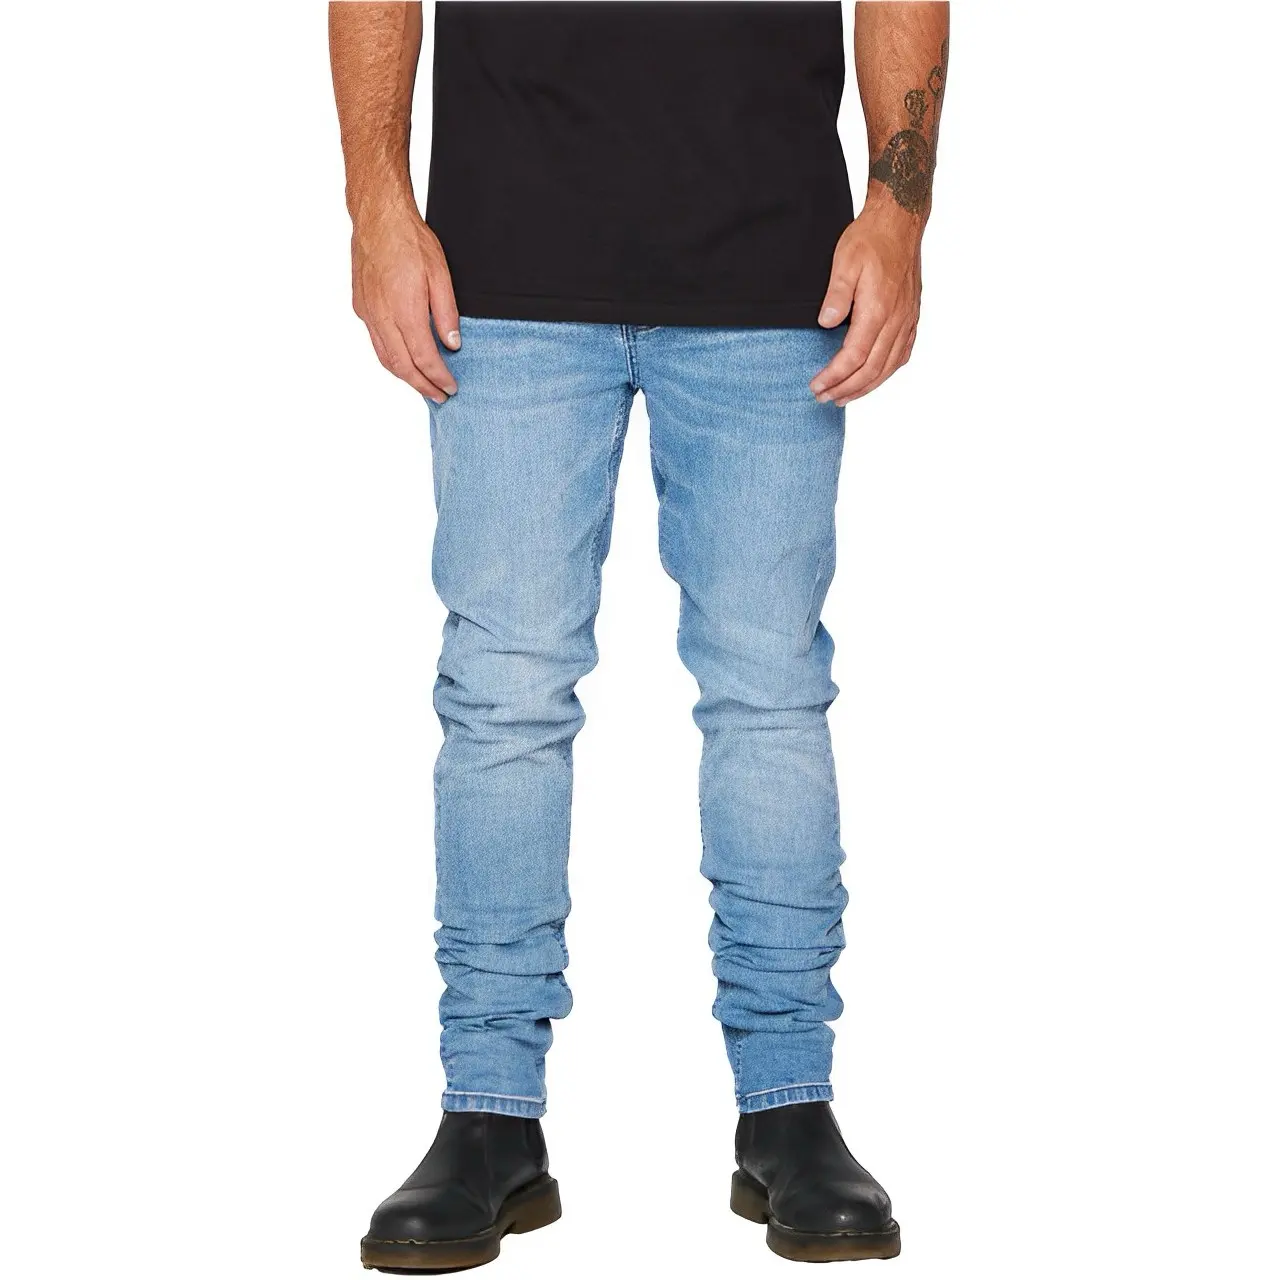 Jeans denim pria, disesuaikan grosir ukuran besar desainer nyaman